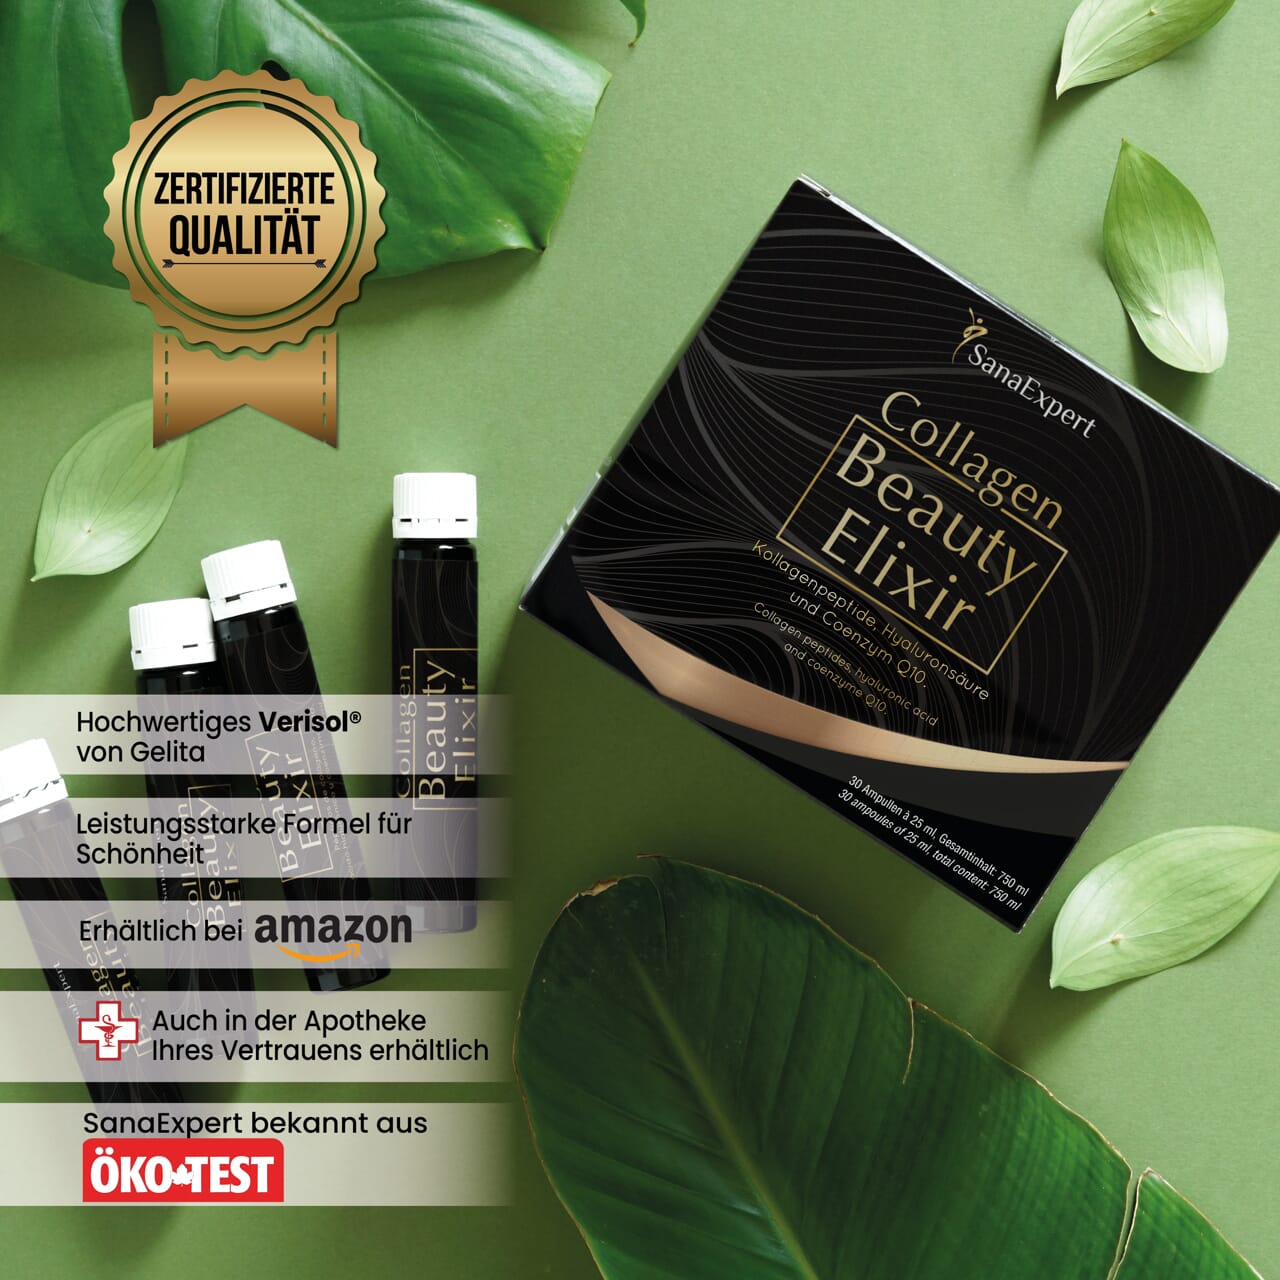 Werbebild von SanaExpert Collagen Beauty Elixir mit einem Siegel für zertifizierte Qualität, Präsentation des Produkts mit grünen Blättern.